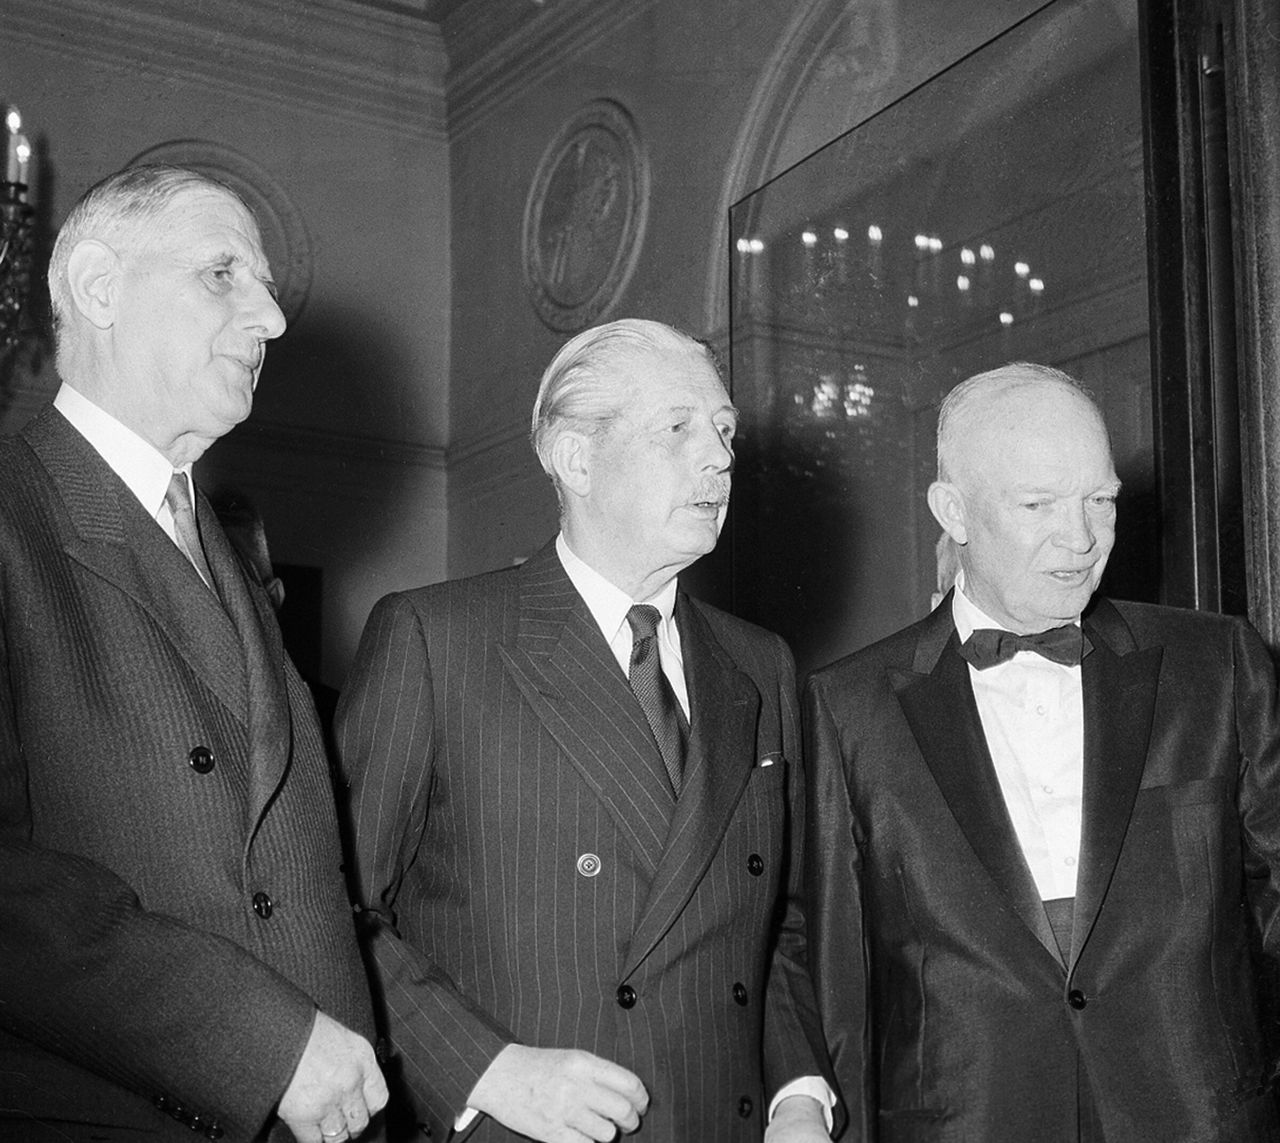 17 Μαΐου 1960 - Ο ντε Γκώλ (αριστερά) στο κέντρο ο Βρετανός πρωθυπουργός Μακμίλαν και δεξιά ο αμερικανός πρόεδρος Άιζενχάουερ. Ο Ντε Γκώλ για δεύτερη φορά άσκησε βέτο όσον αφορά την ένταξη της Μ.Β. στην ΕΟΚ.